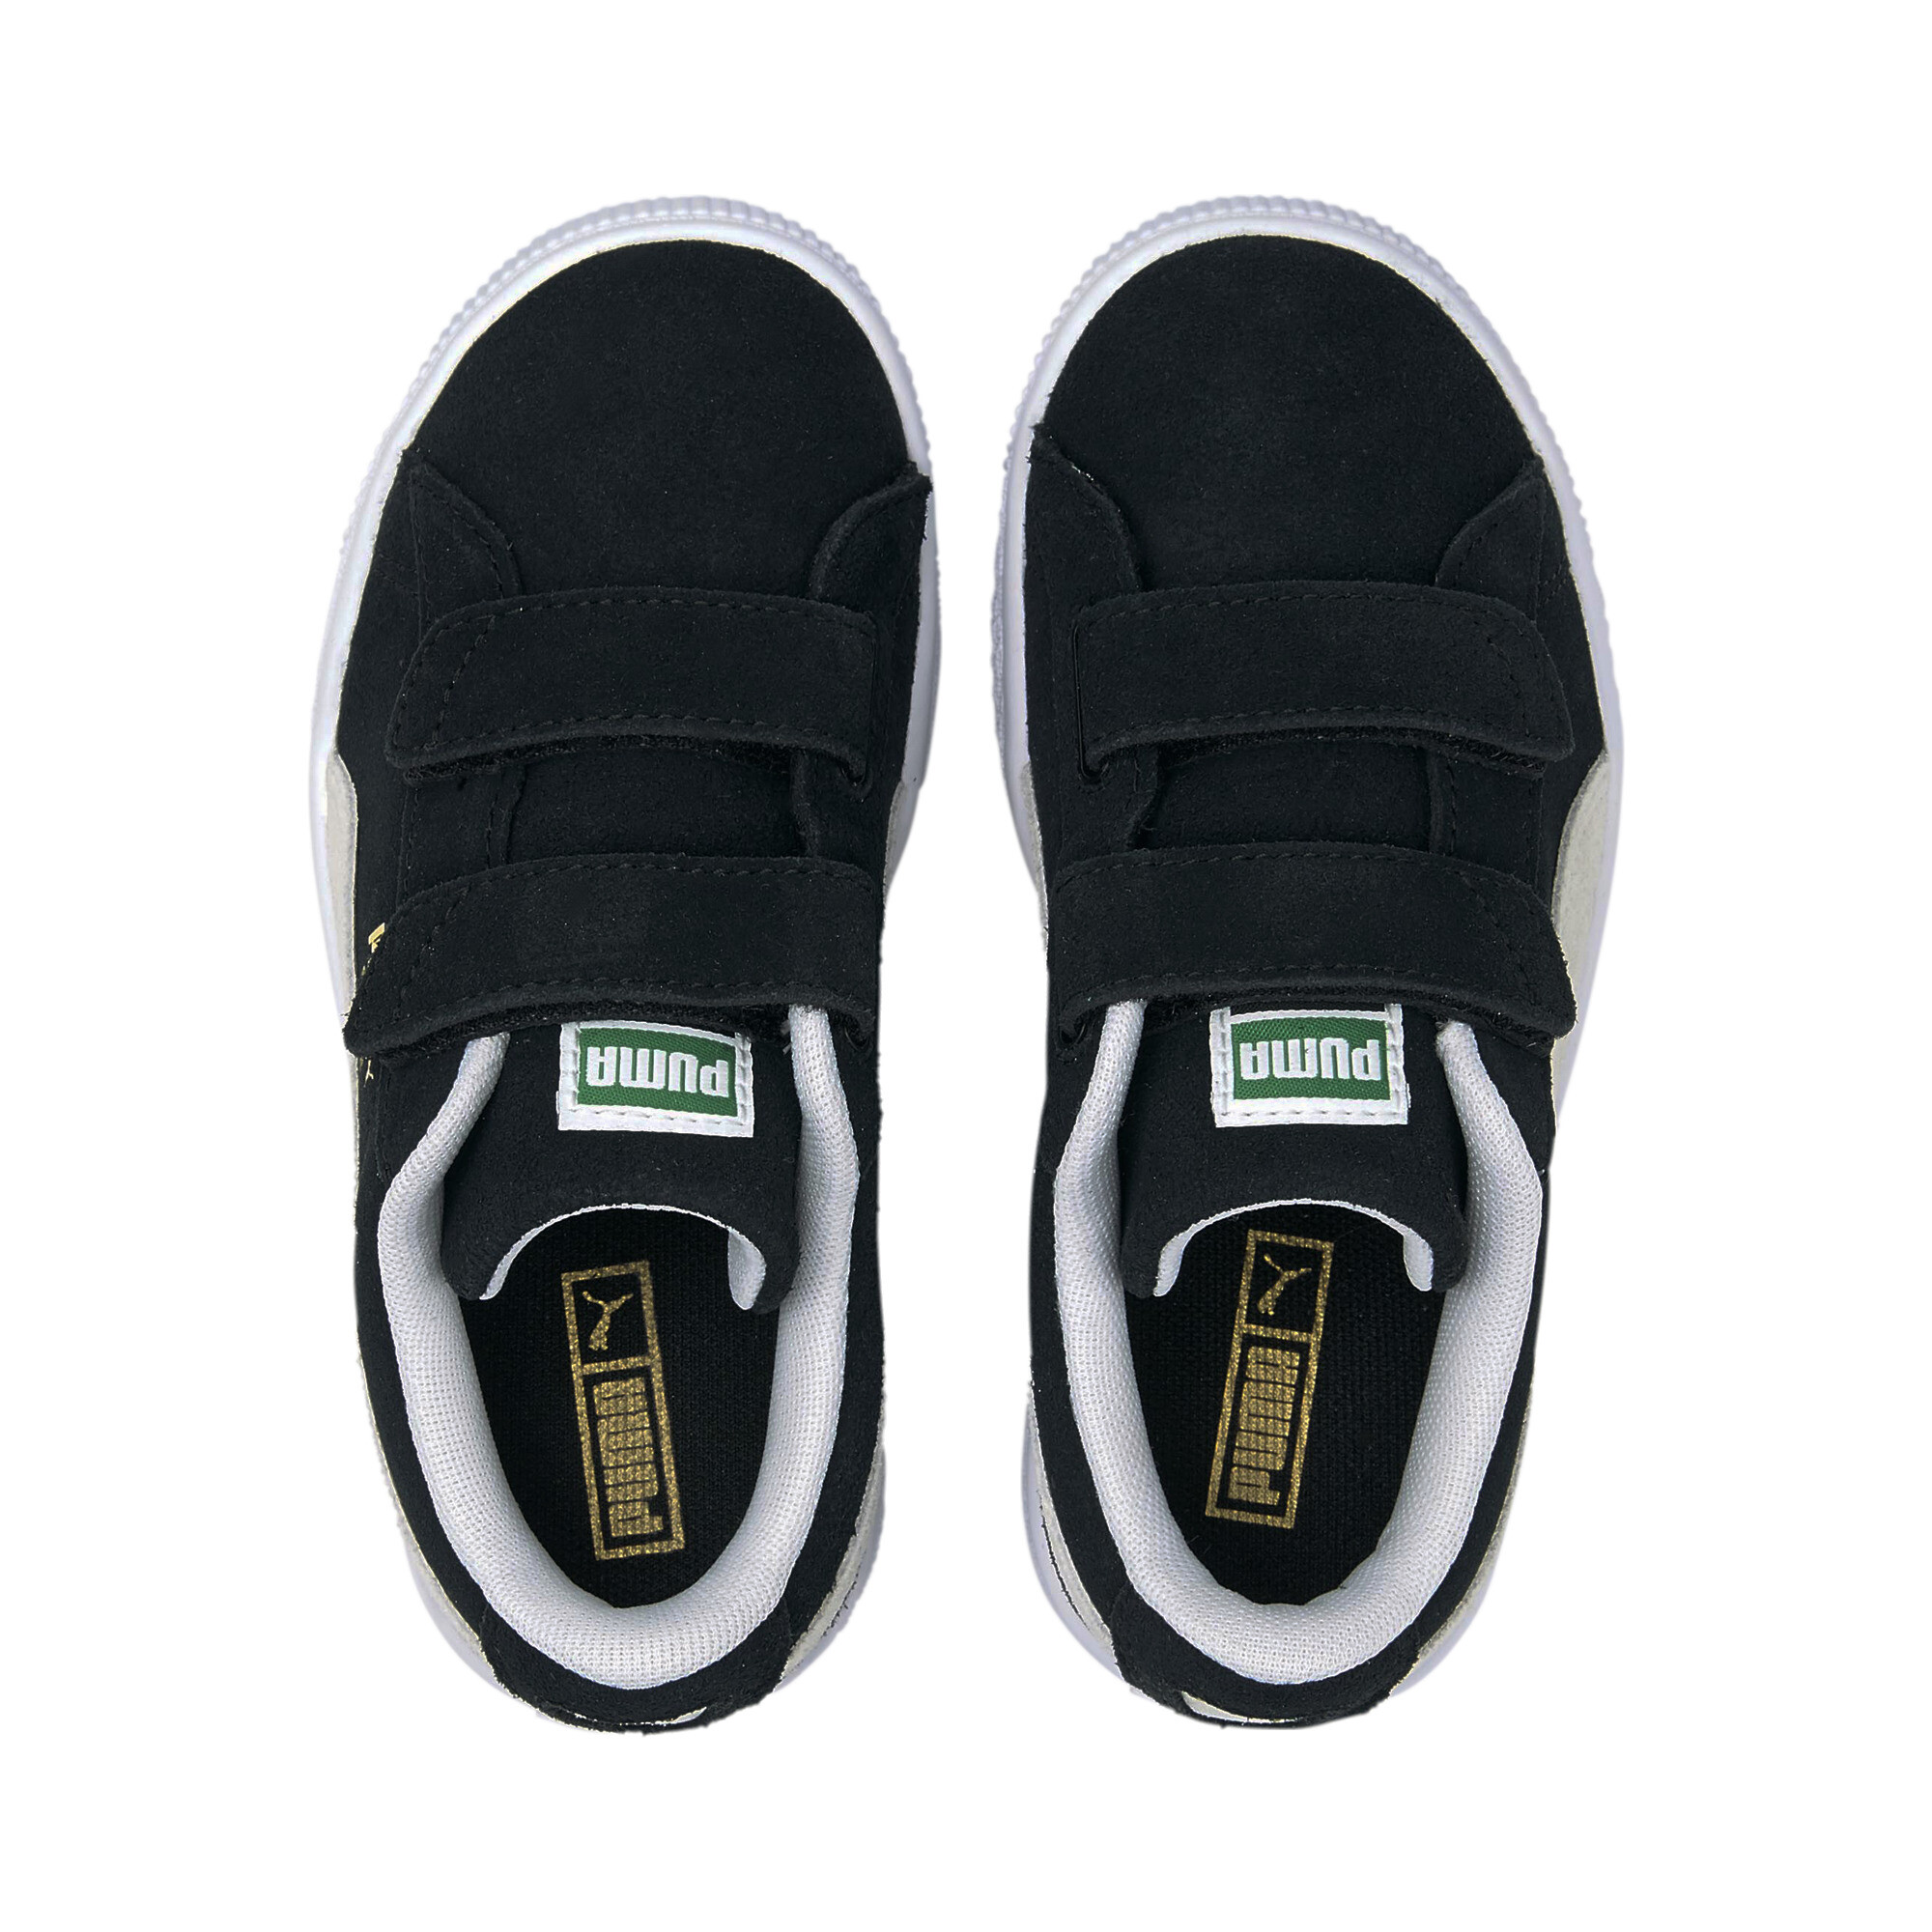 Kids' PUMA Suede Classic XXI Trainers Shoes In Black, Size EU 34.5